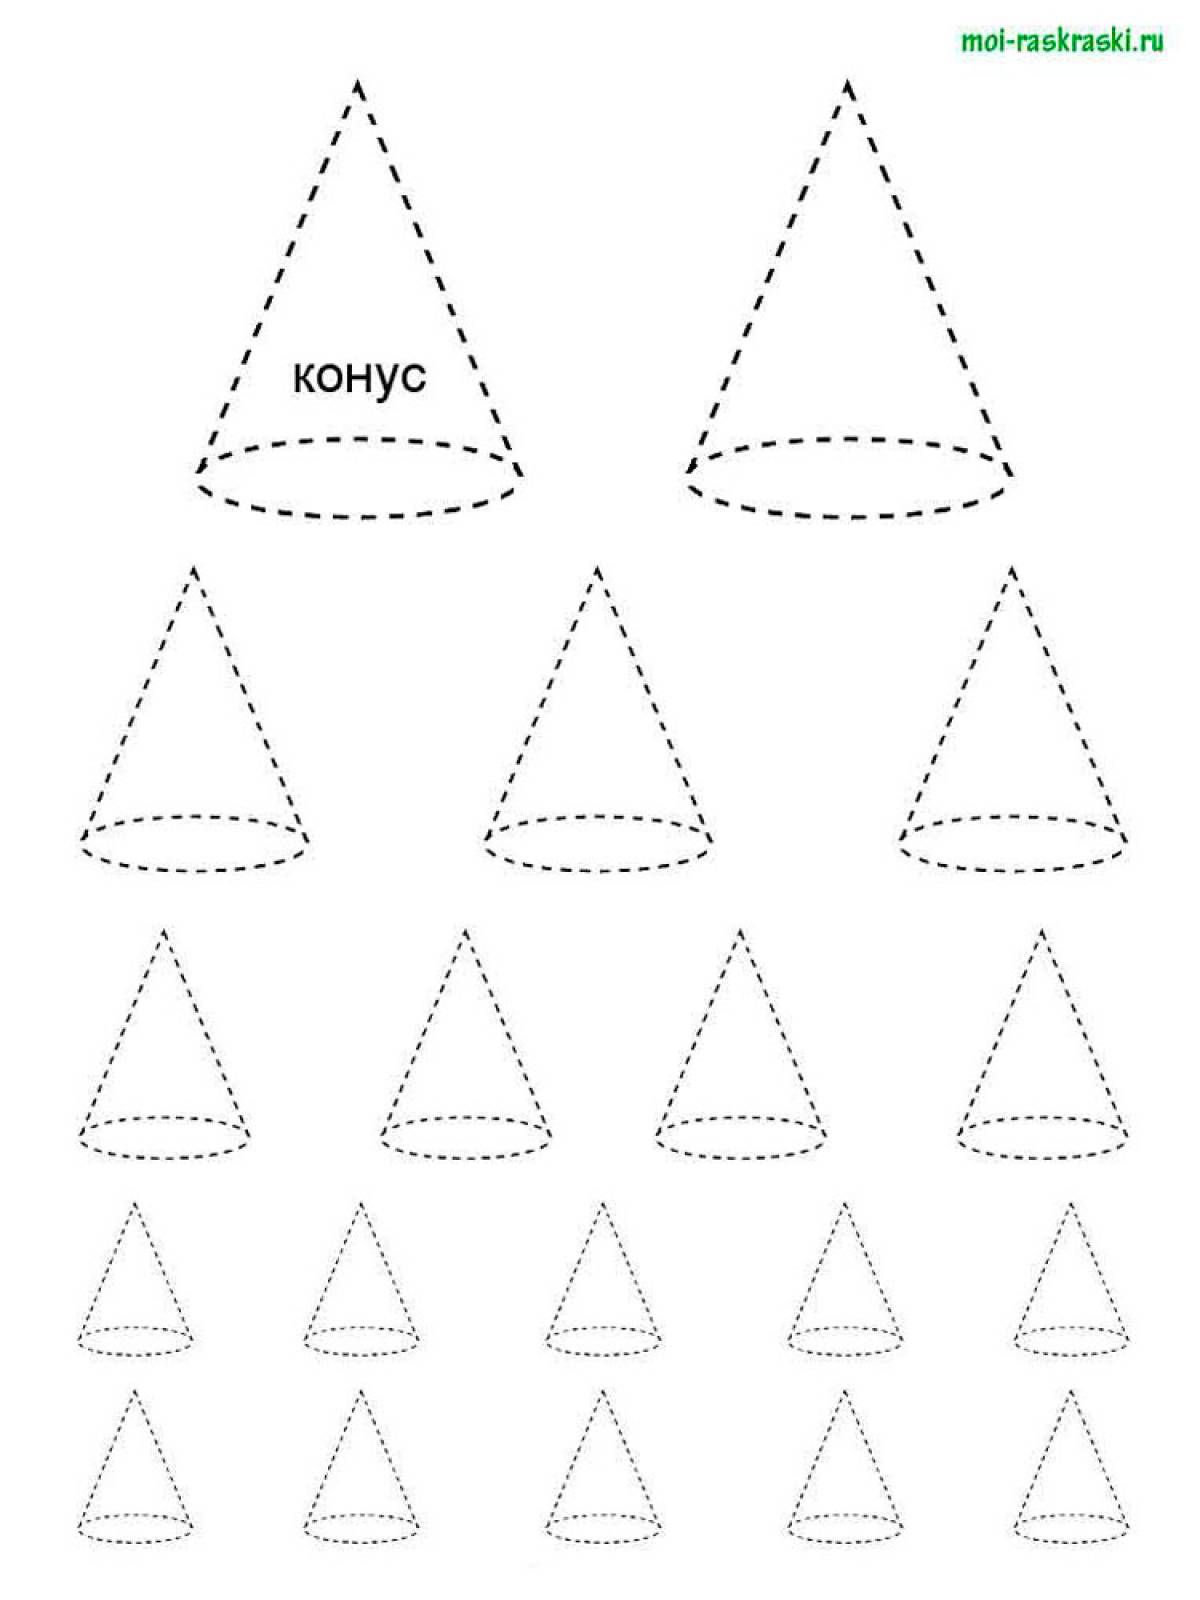 Geometric shapes 35